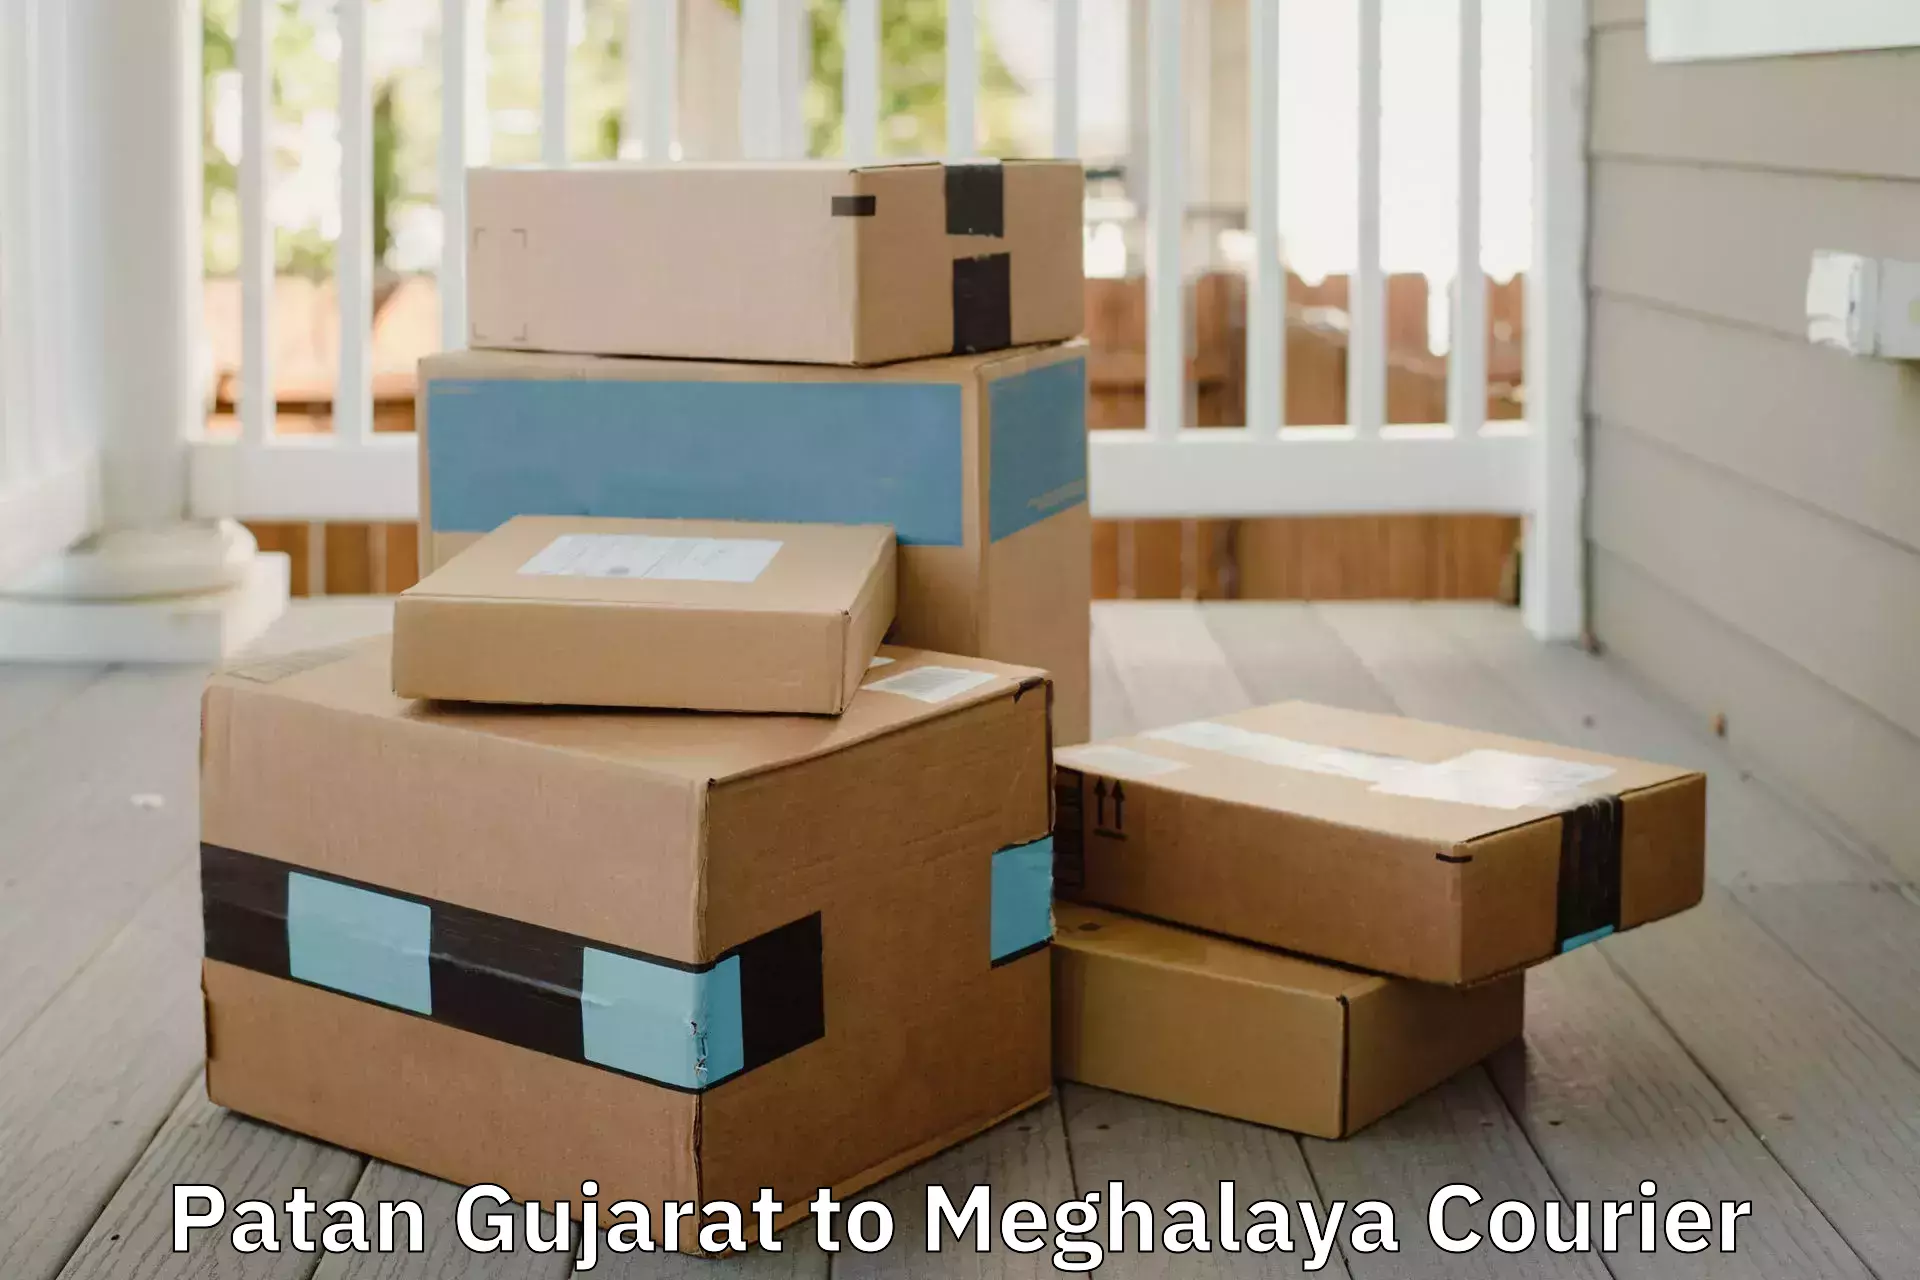 Professional packing services Patan Gujarat to NIT Meghalaya